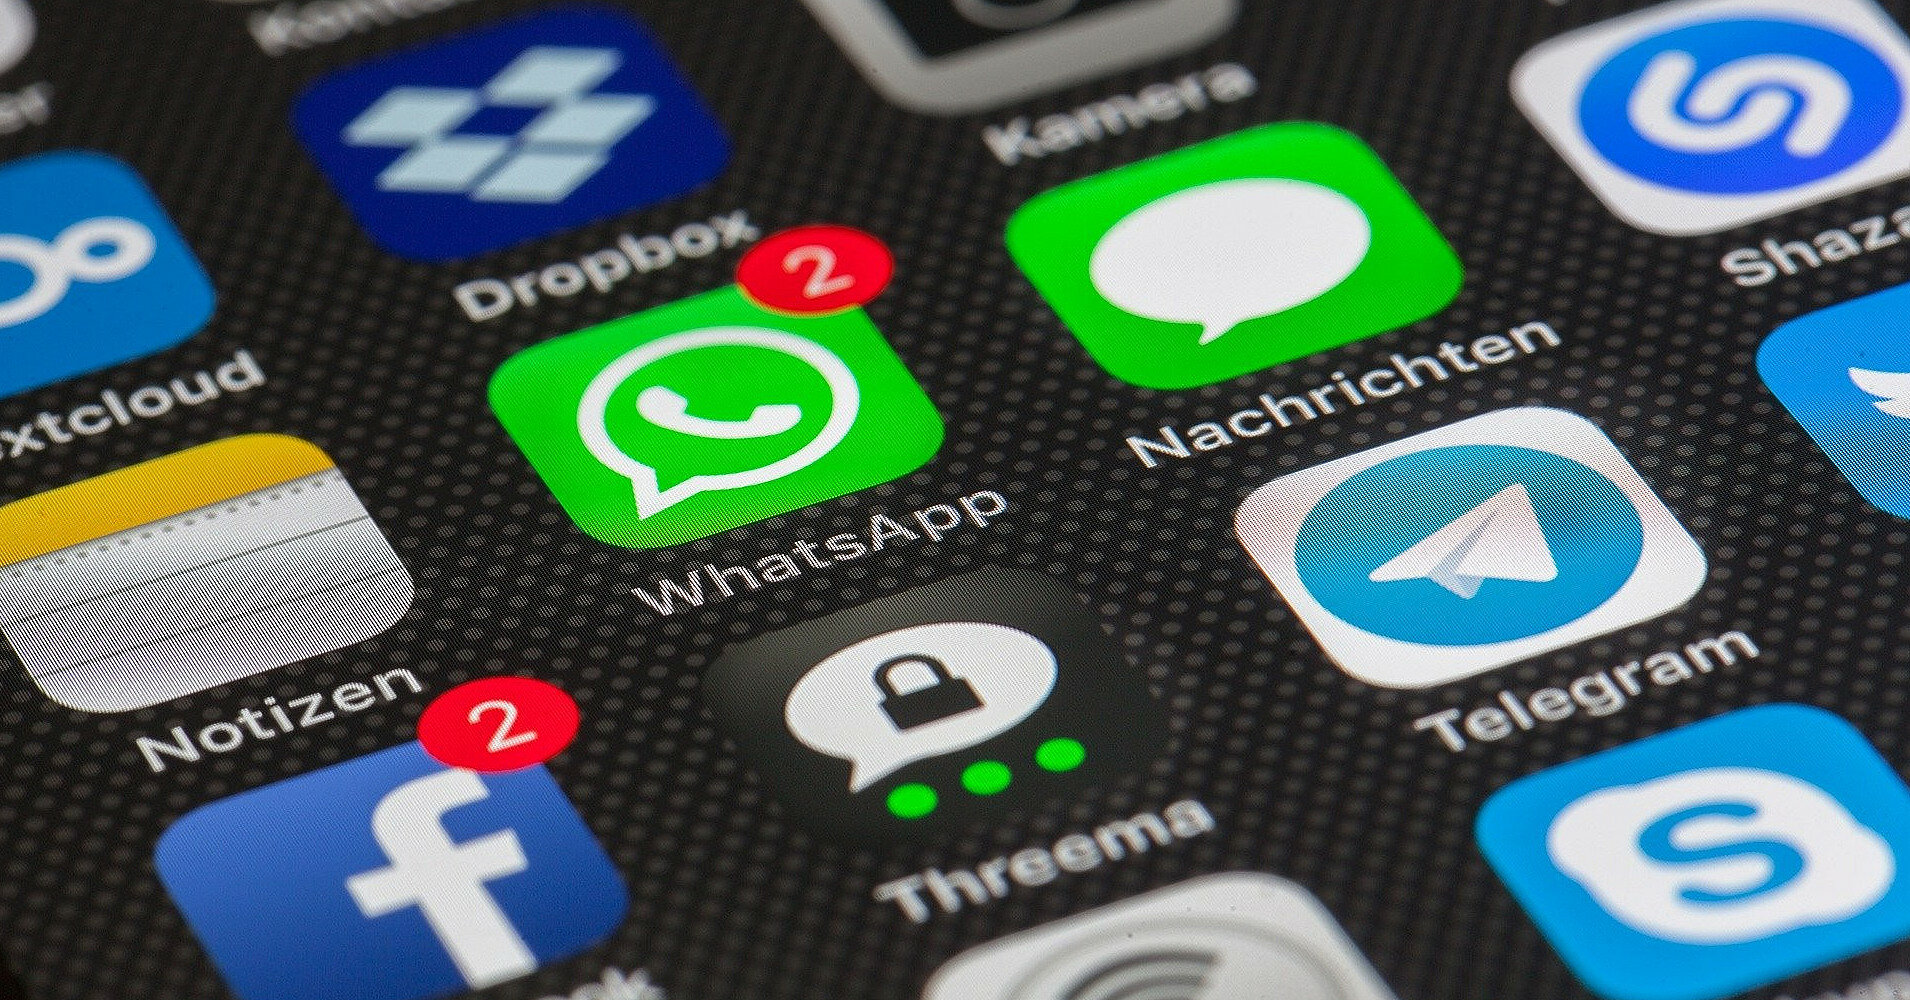 WhatsApp переписал политику конфиденциальности